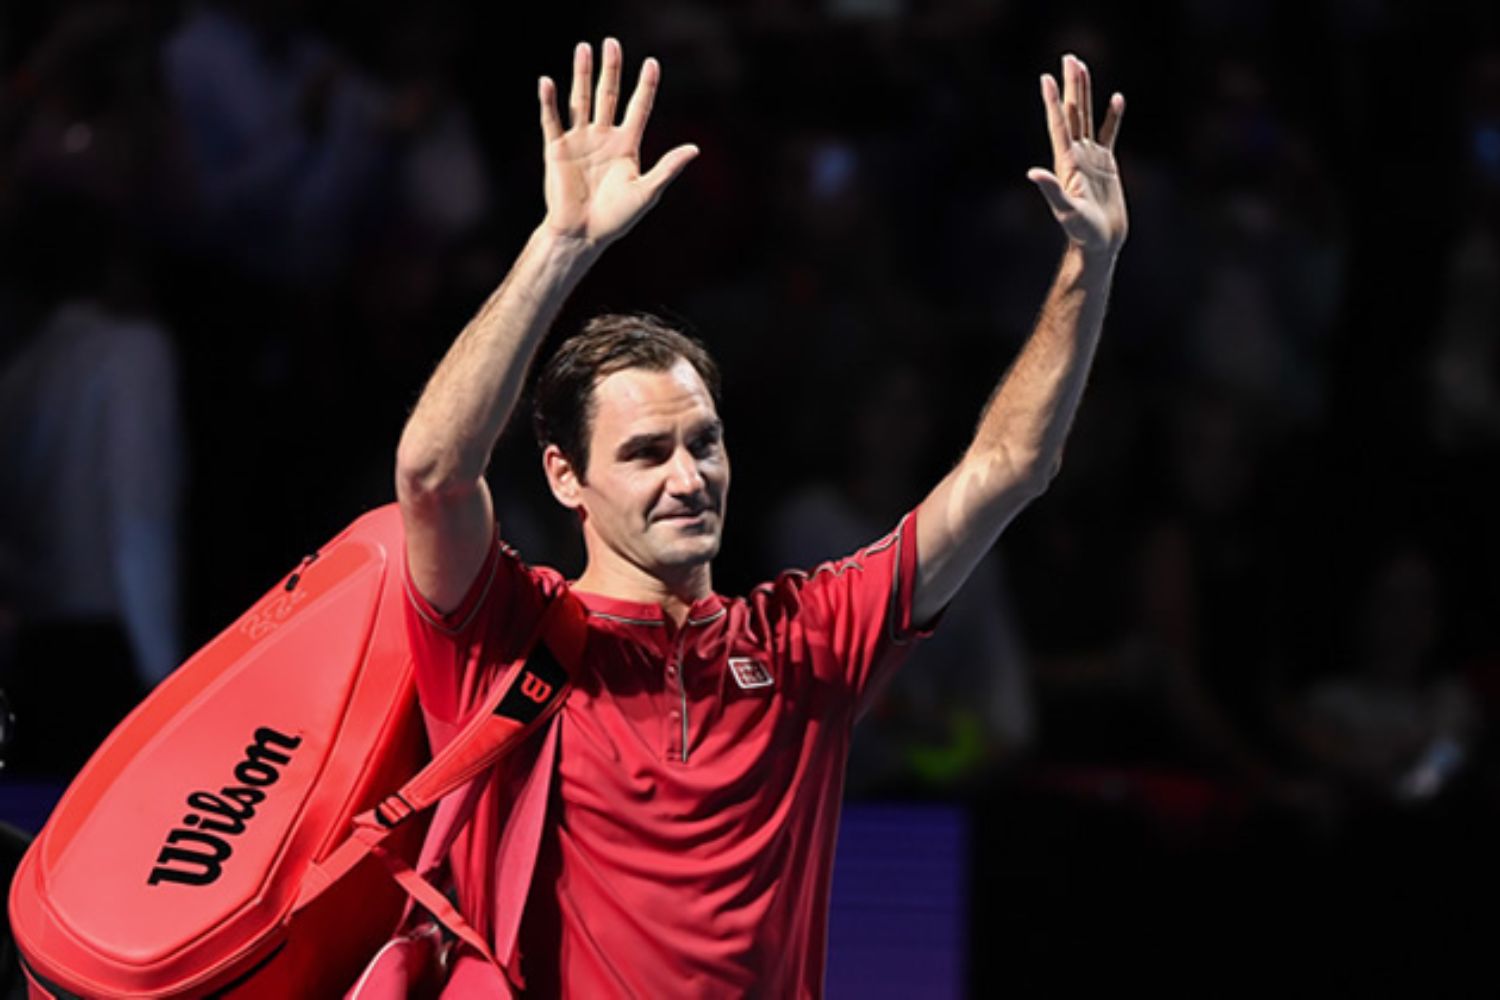 Roger Federer retires from tennis